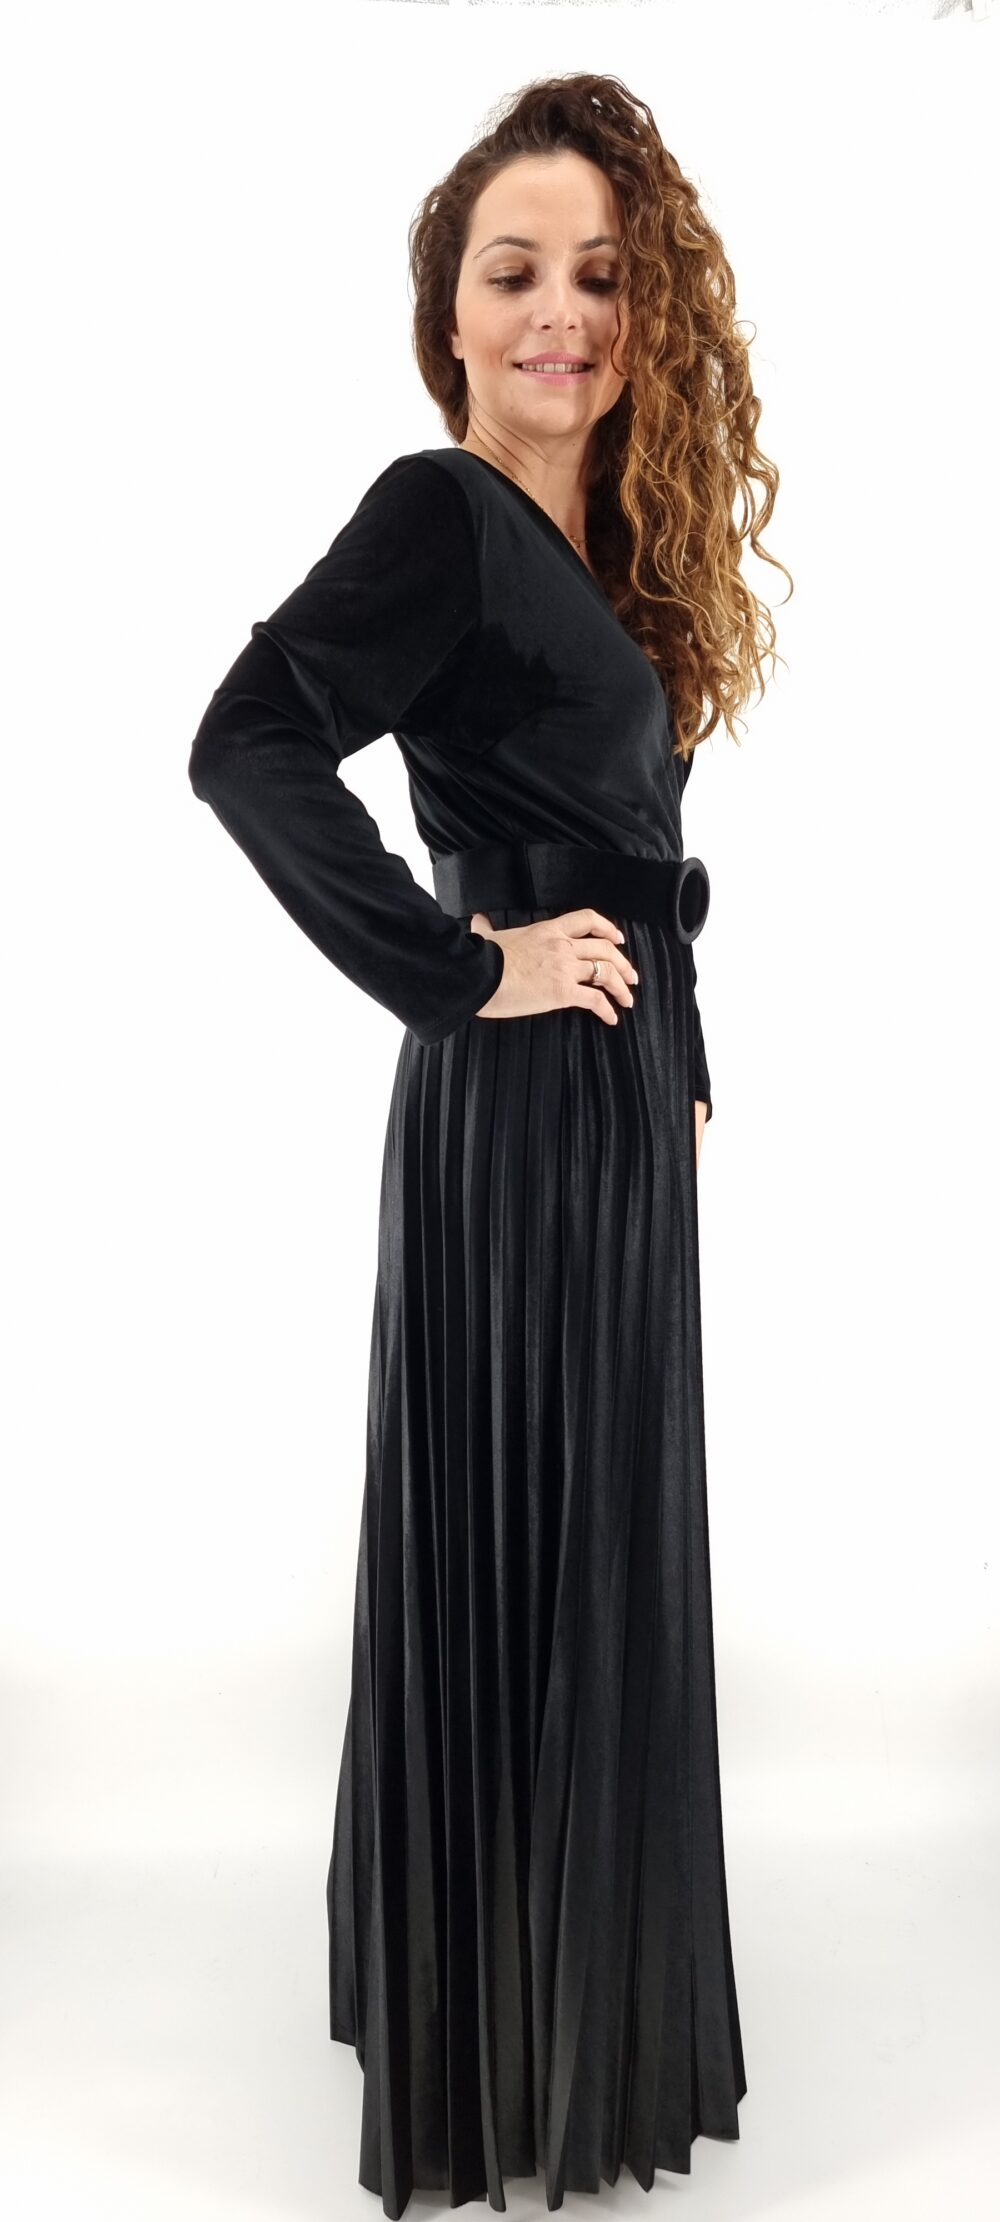 Φόρεμα μακρύ βελουτέ κρουαζέ με ίδια ζώνη και πλισέ τελείωμα μαύρο